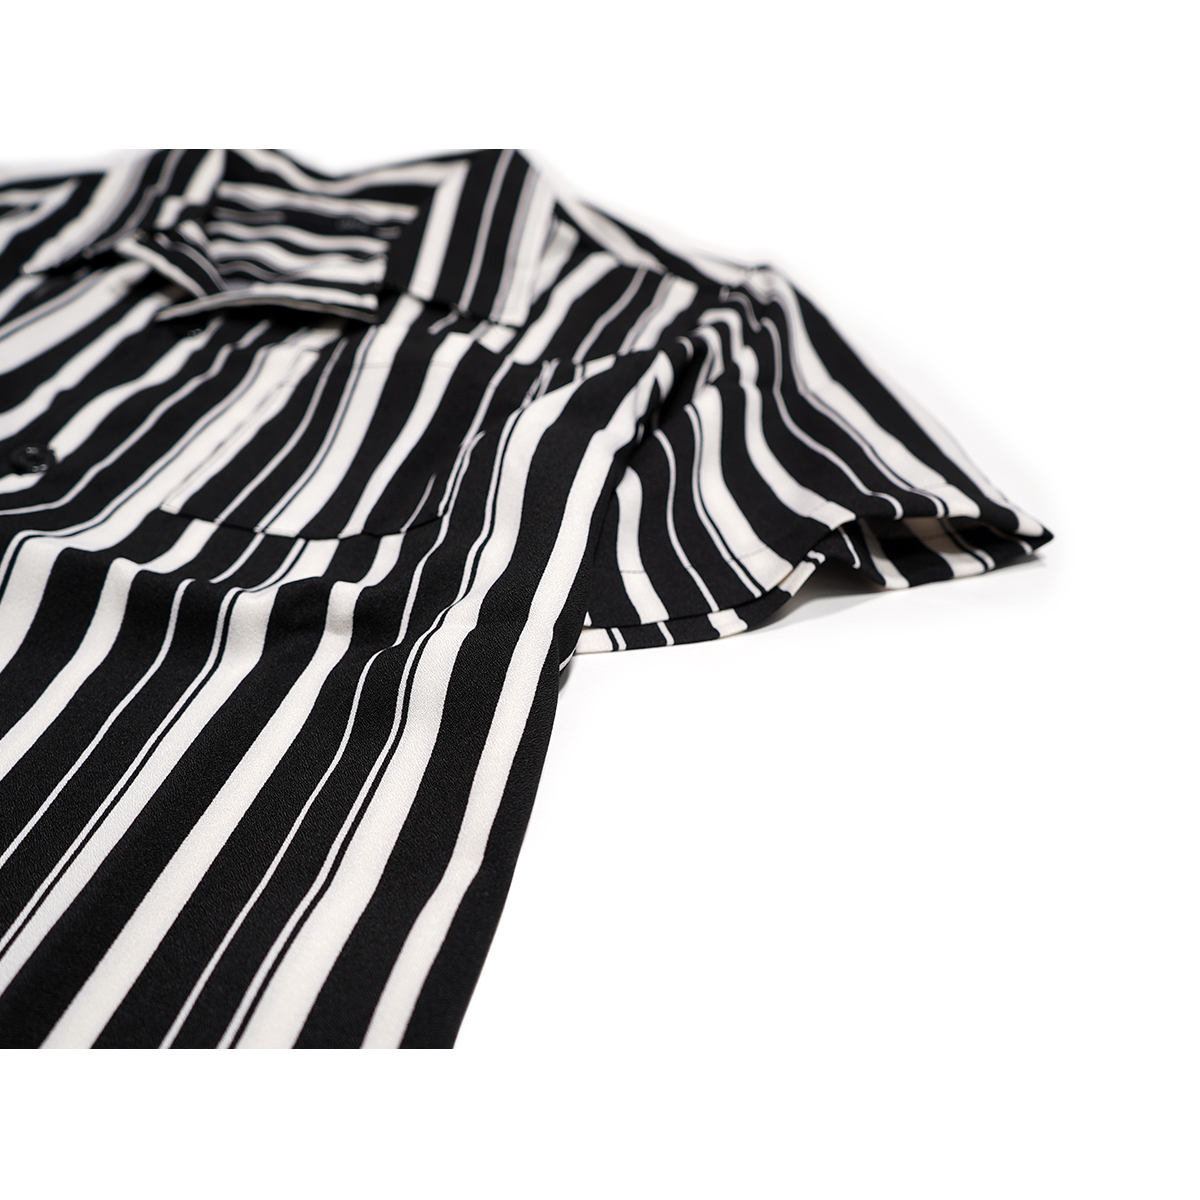 【新品】 オープンカラーシャツ ストライプ ■ Lサイズ / ホワイト白×ブラック黒① ■アロハシャツ 開襟シャツ 半袖シャツ oc i06-6204_画像5